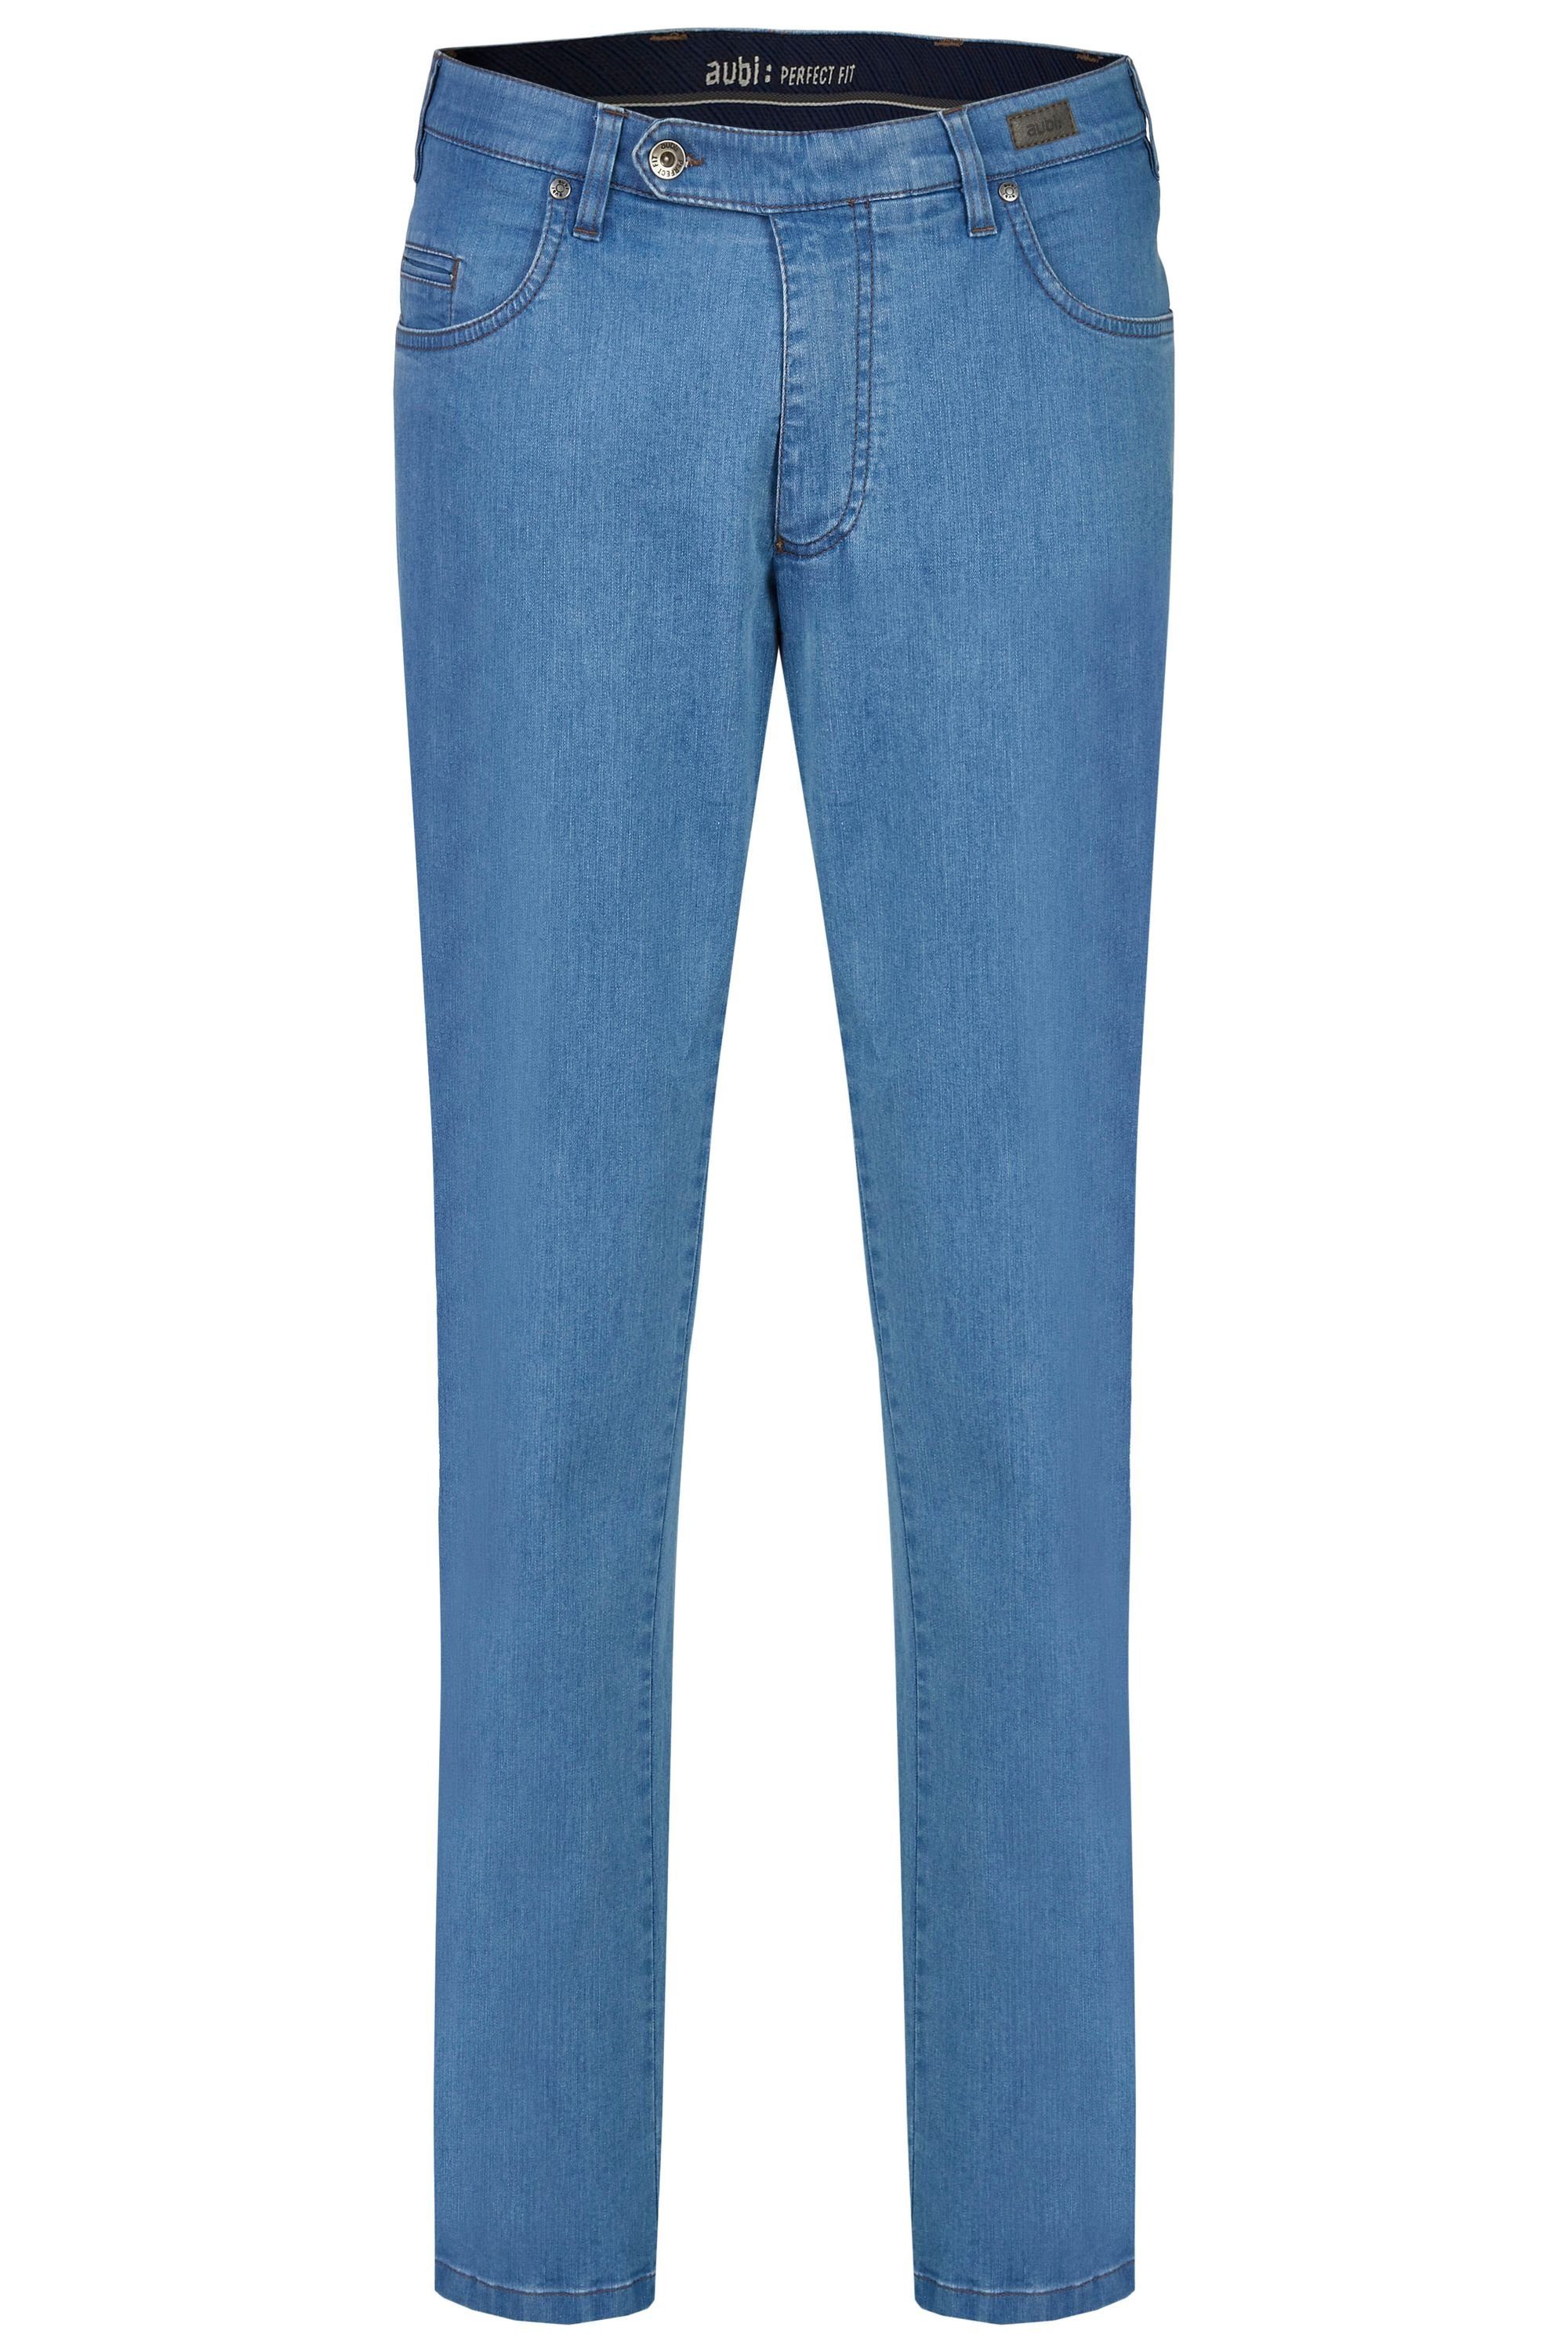 aubi: Bequeme Jeans aubi Perfect Fit Herren Sommer Jeans Hose Stretch aus Baumwolle High Flex Modell 577 bleached (43)